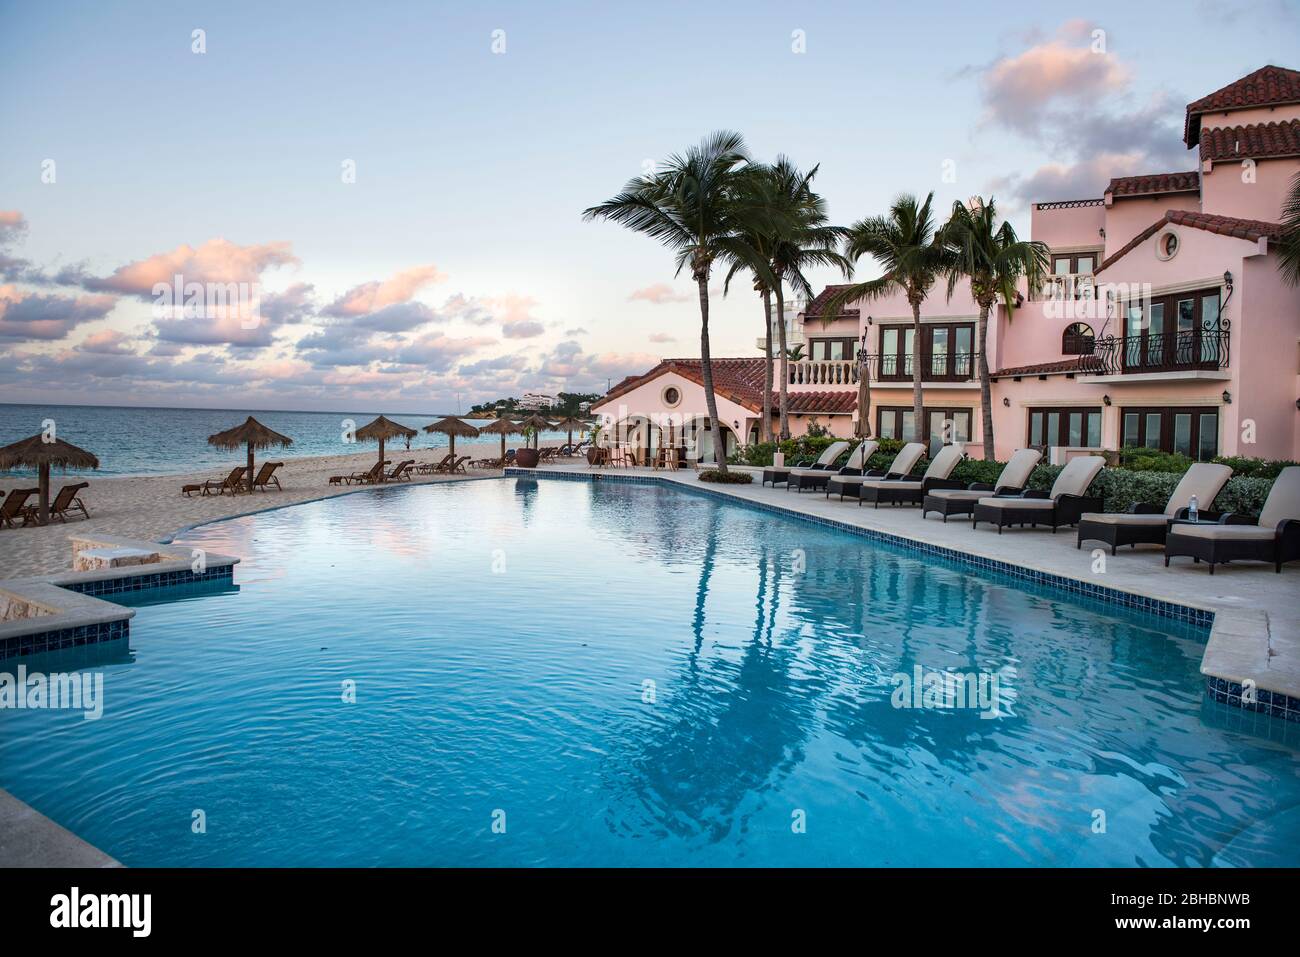 Les Caraïbes, Anguilla. La piscine de l'hôtel Frangipani. Banque D'Images